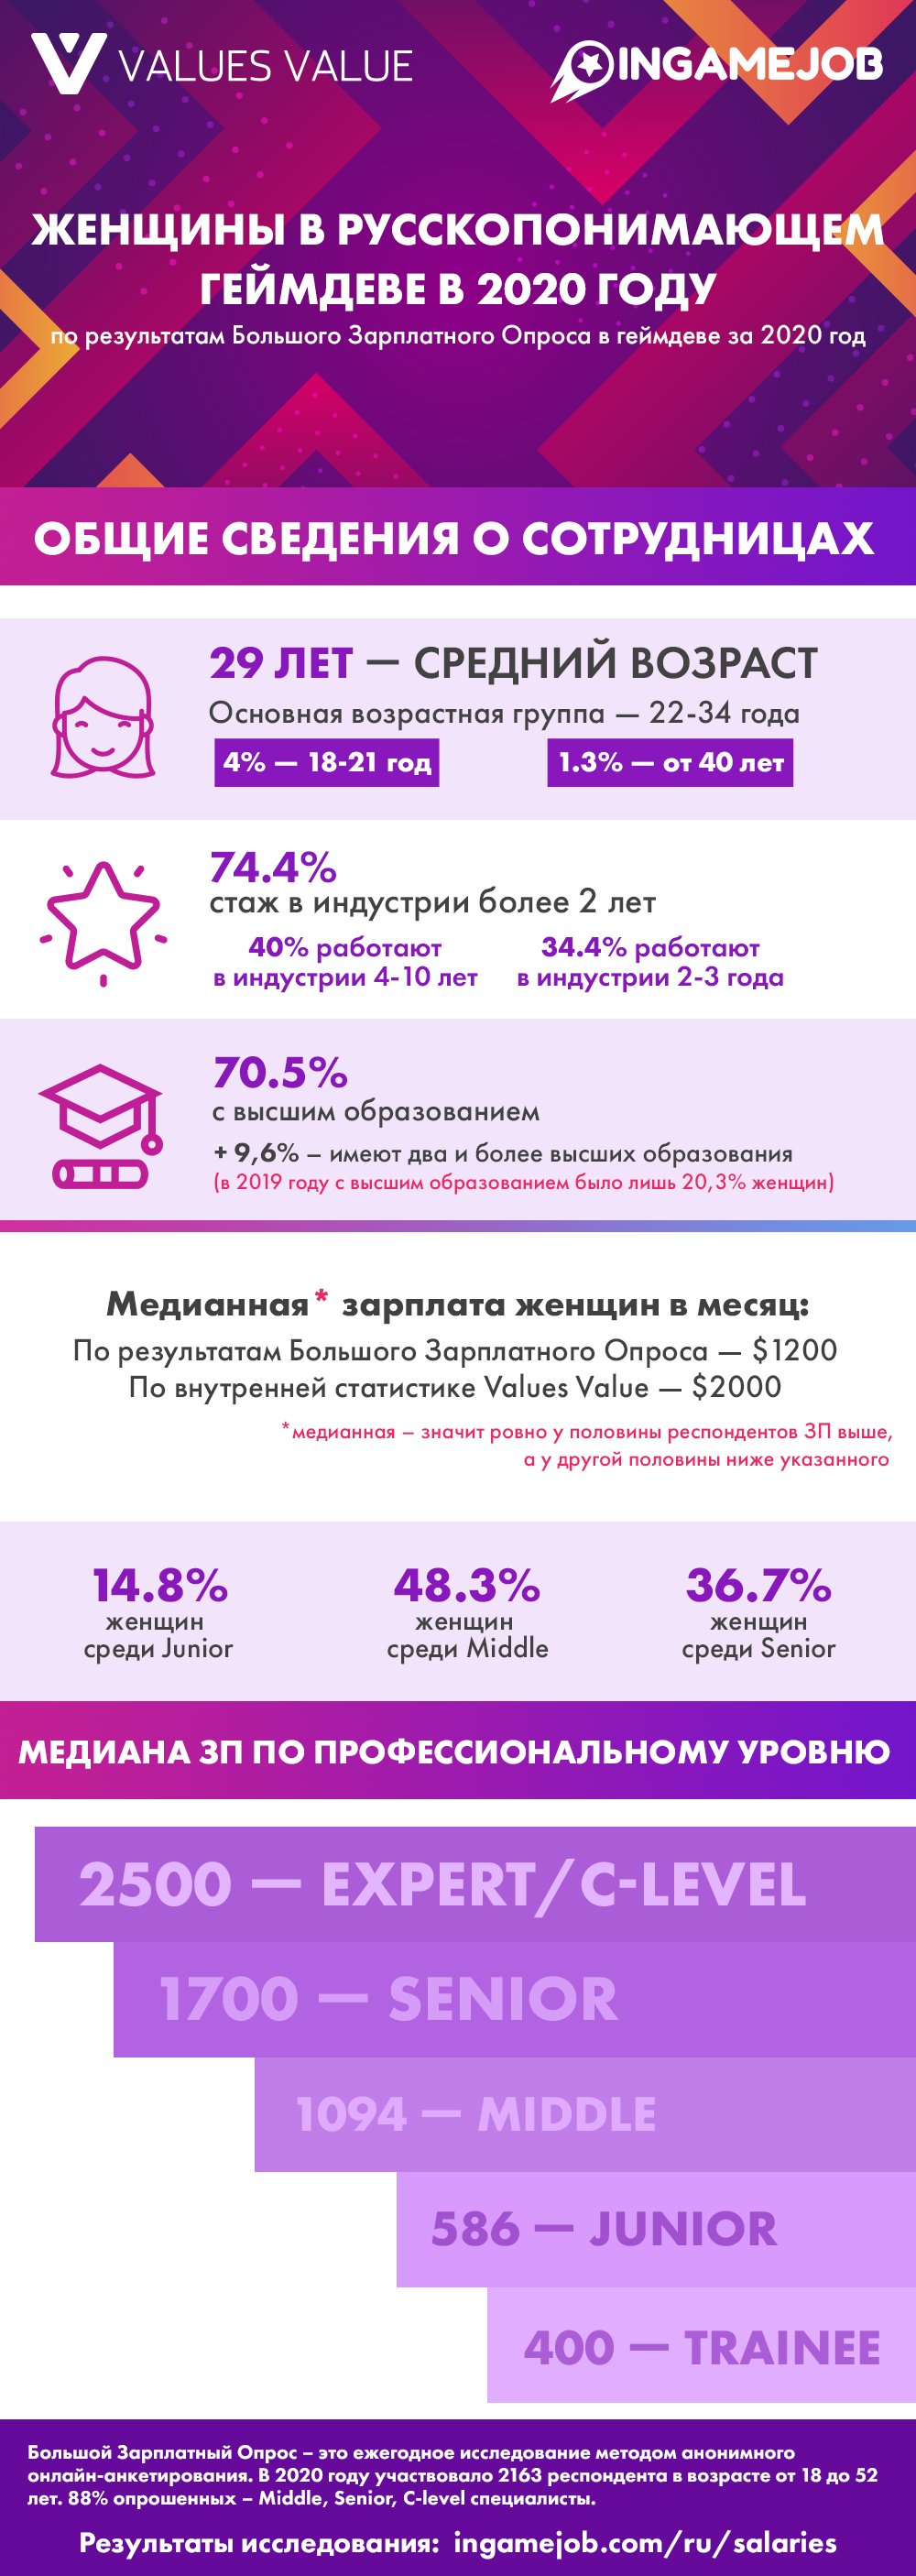 Инфографика: женщины в русскопонимающем геймдеве в 2020 году